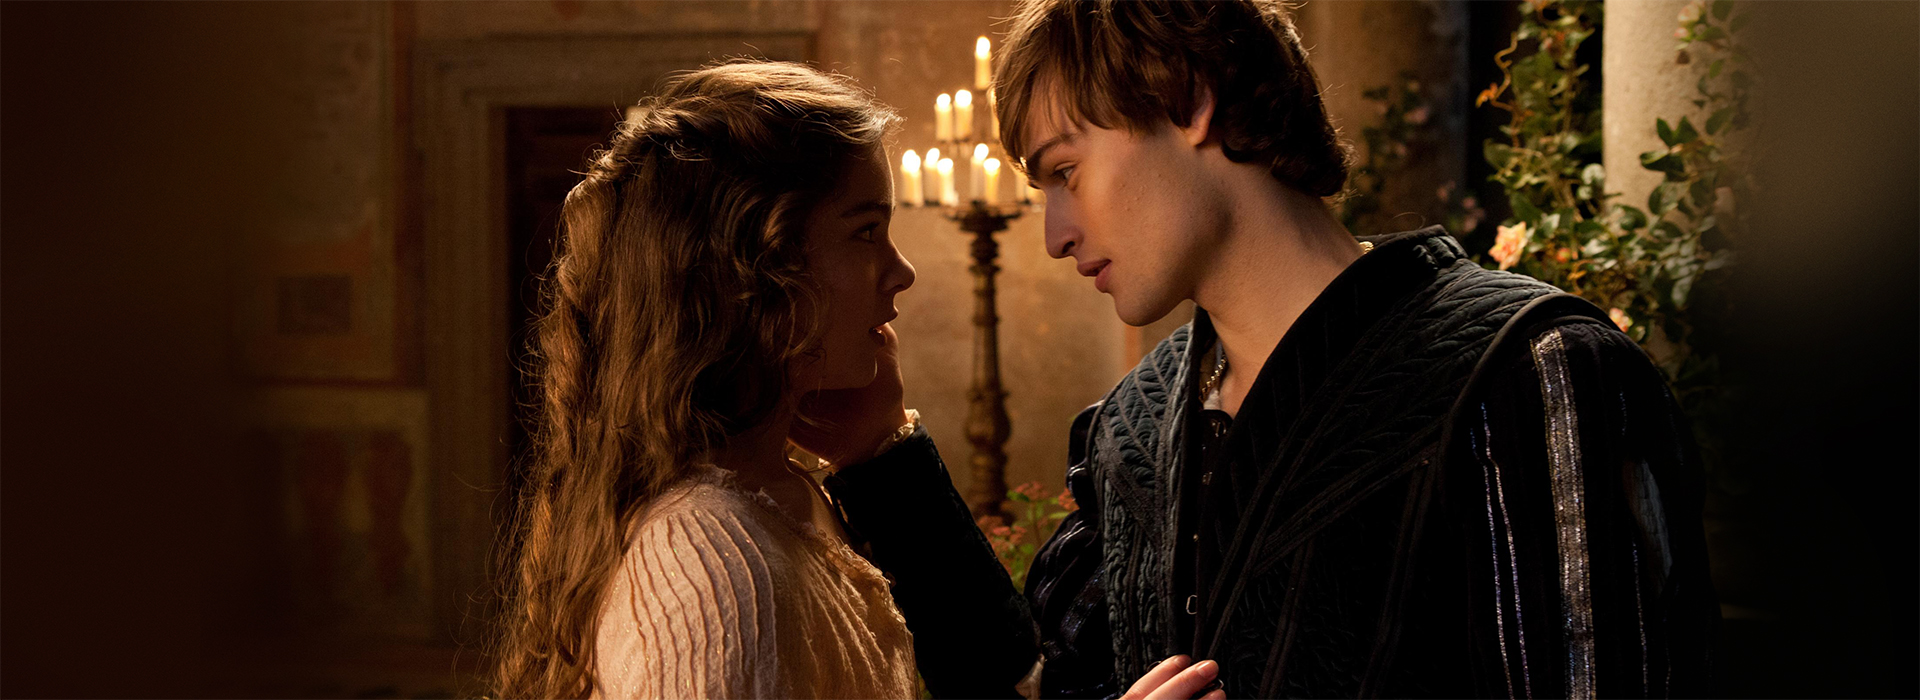 Movie poster Romeo & Juliet